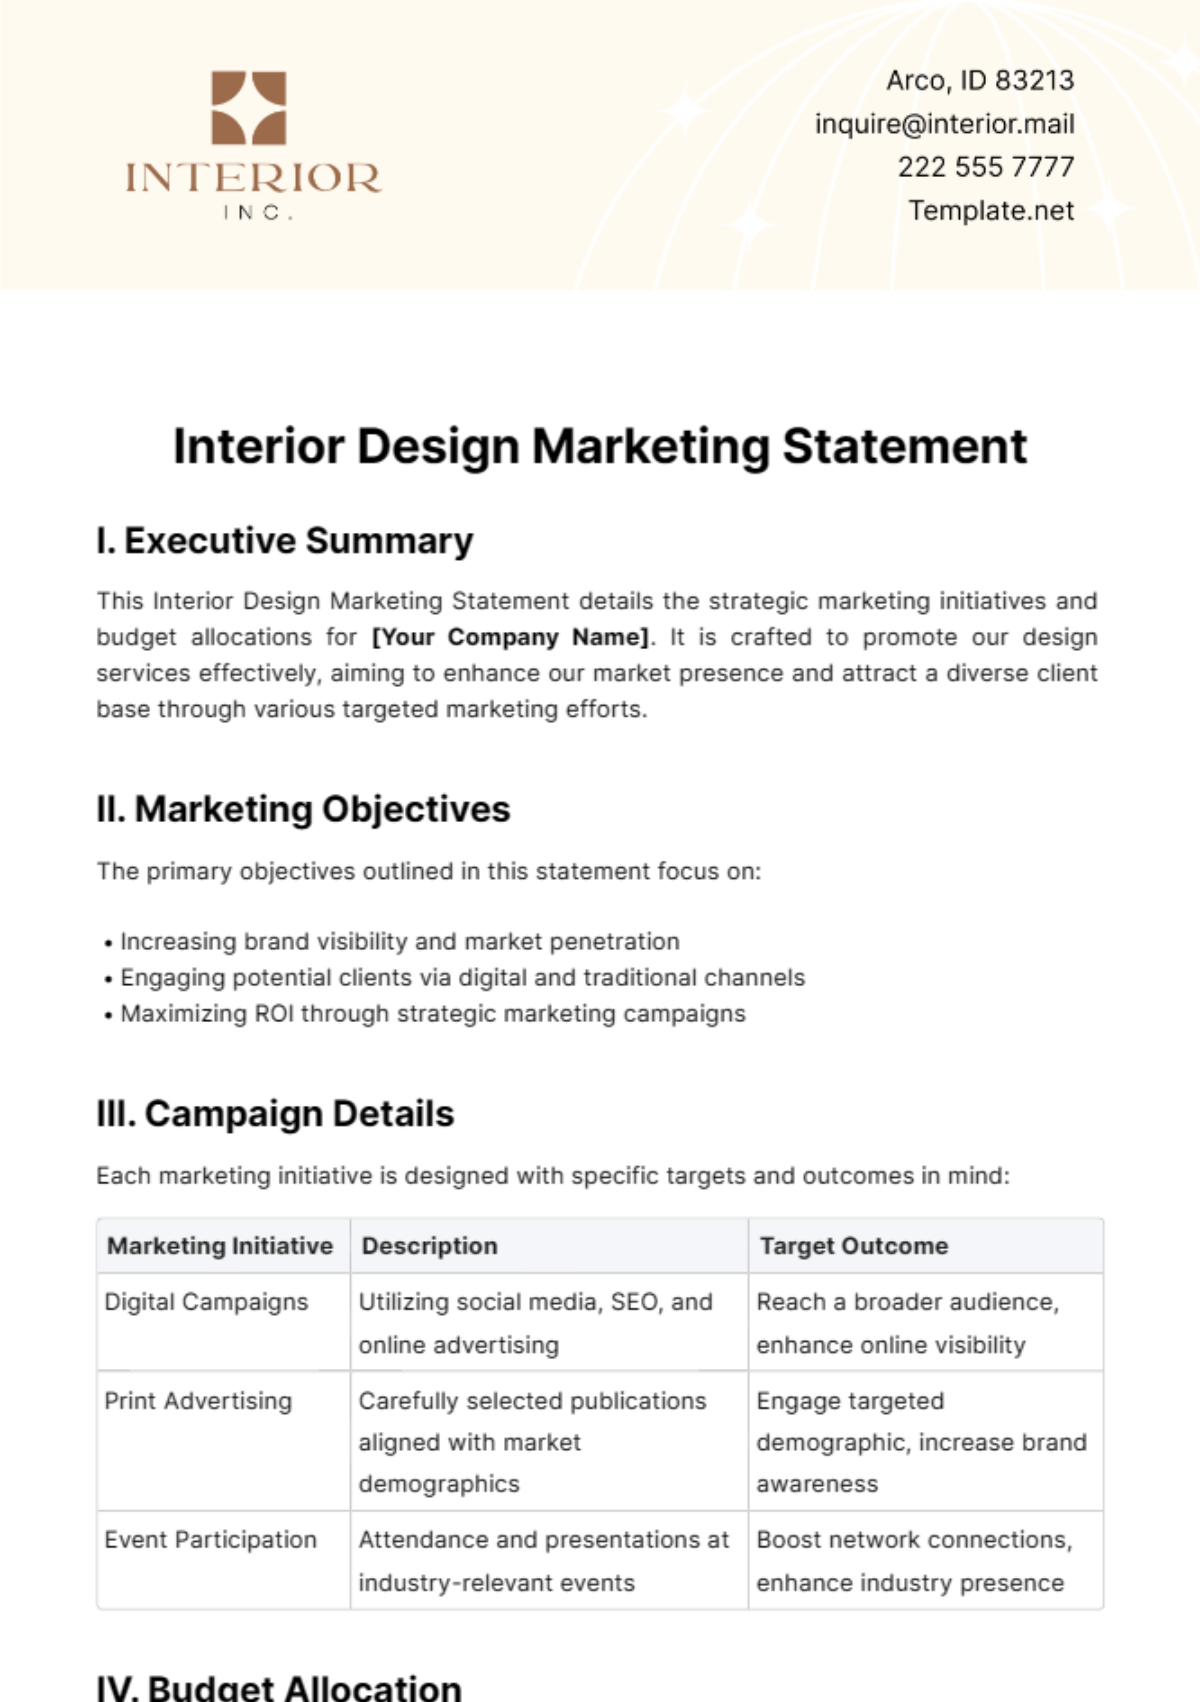 Interior Design Marketing Statement Template